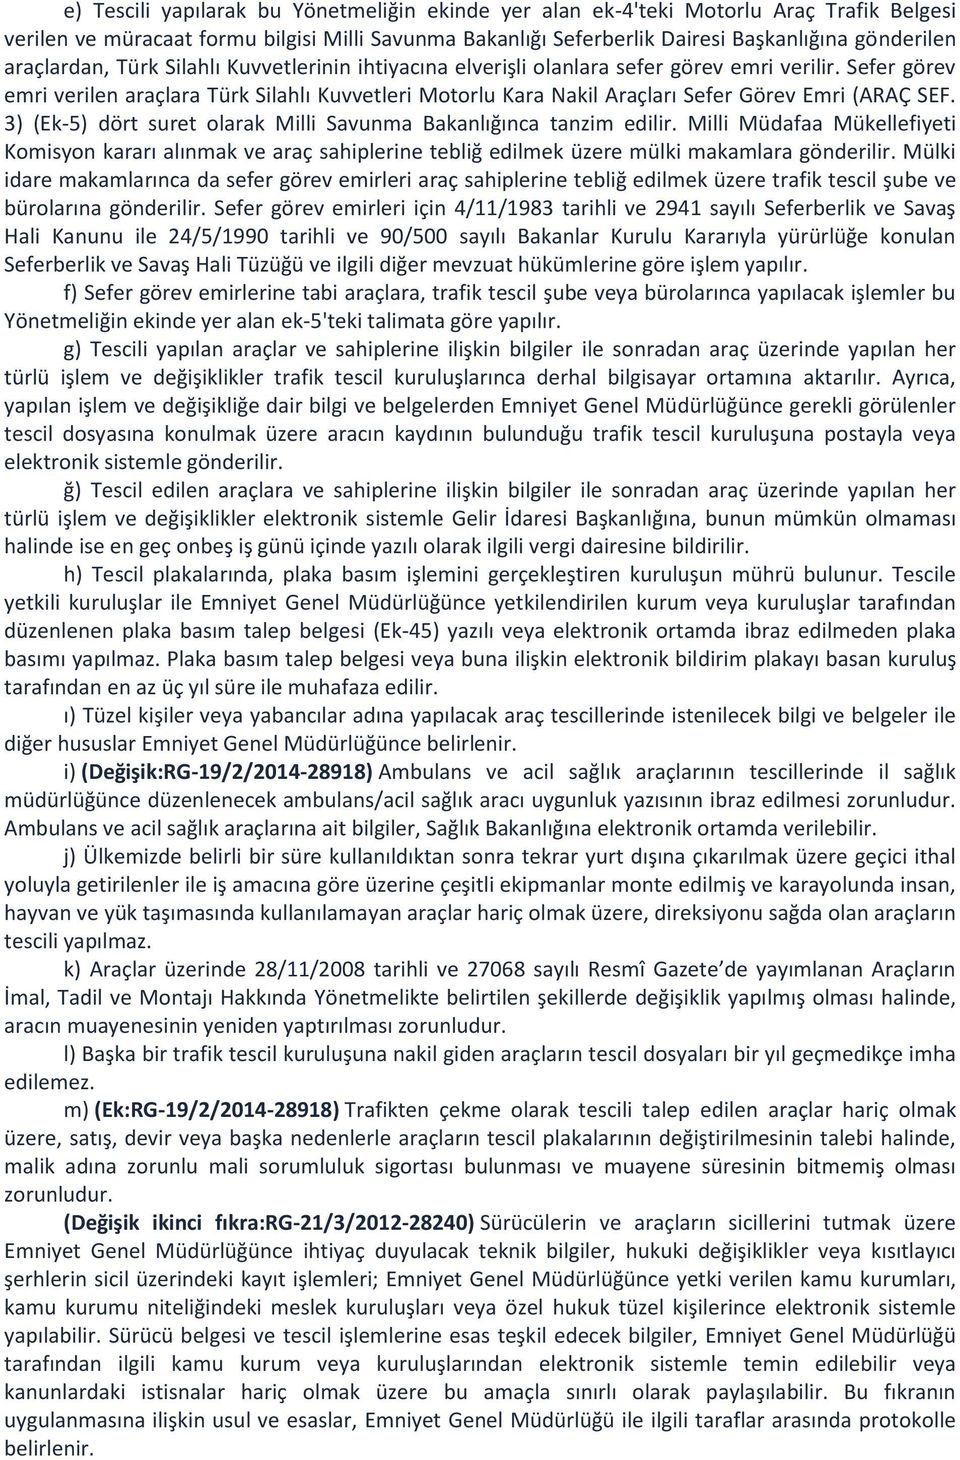 Sefer görev emri verilen araçlara Türk Silahlı Kuvvetleri Motorlu Kara Nakil Araçları Sefer Görev Emri (ARAÇ SEF. 3) (Ek-5) dört suret olarak Milli Savunma Bakanlığınca tanzim edilir.